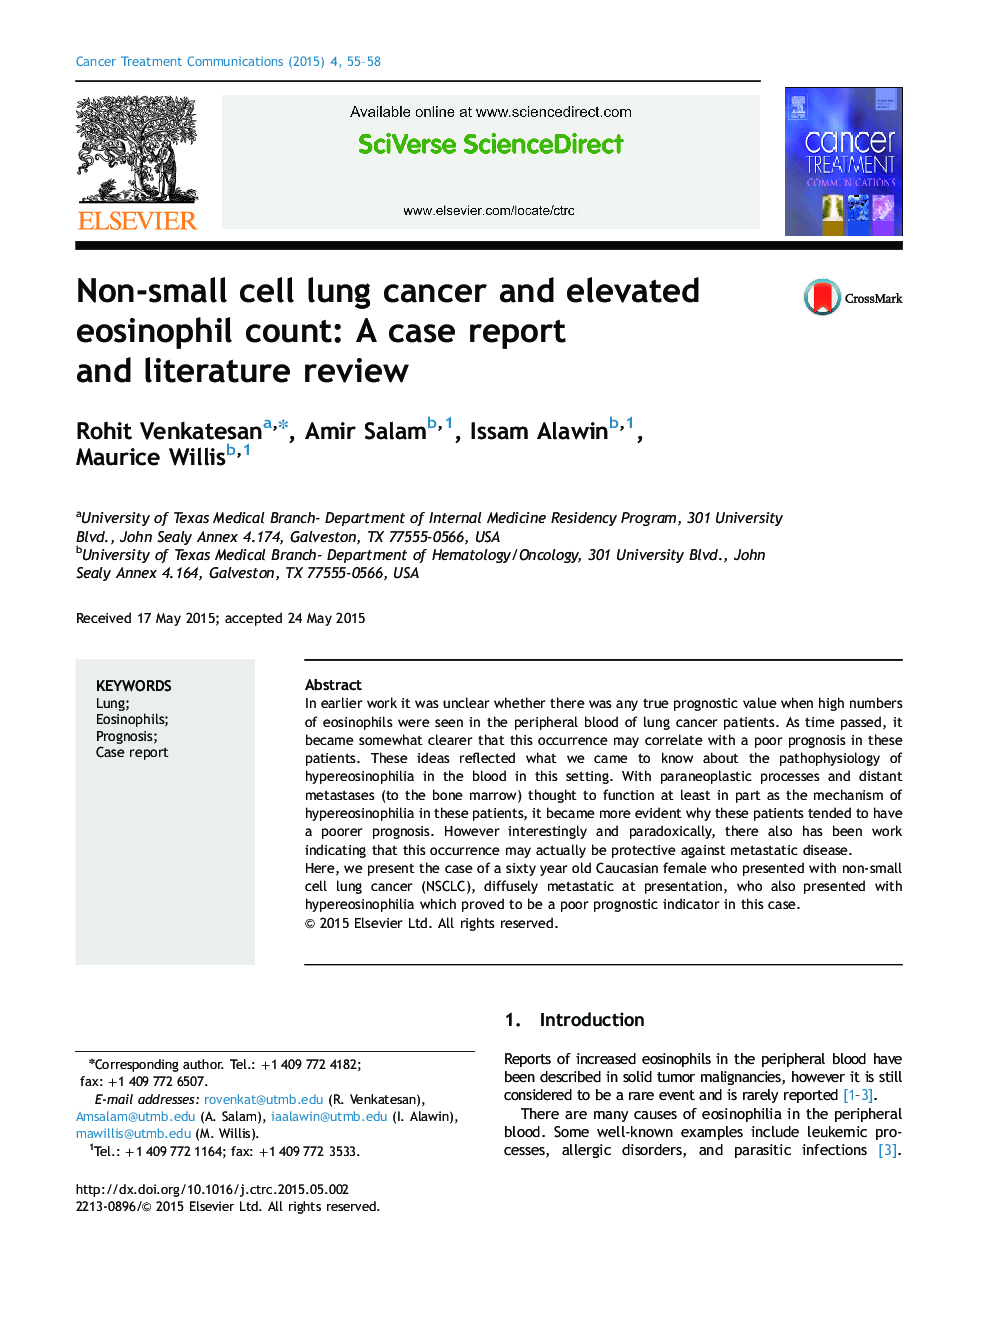 سرطان ریه سلول های غیر سلولی و افزایش تعداد ائوزینوفیل: گزارش مورد و بررسی ادبیات 